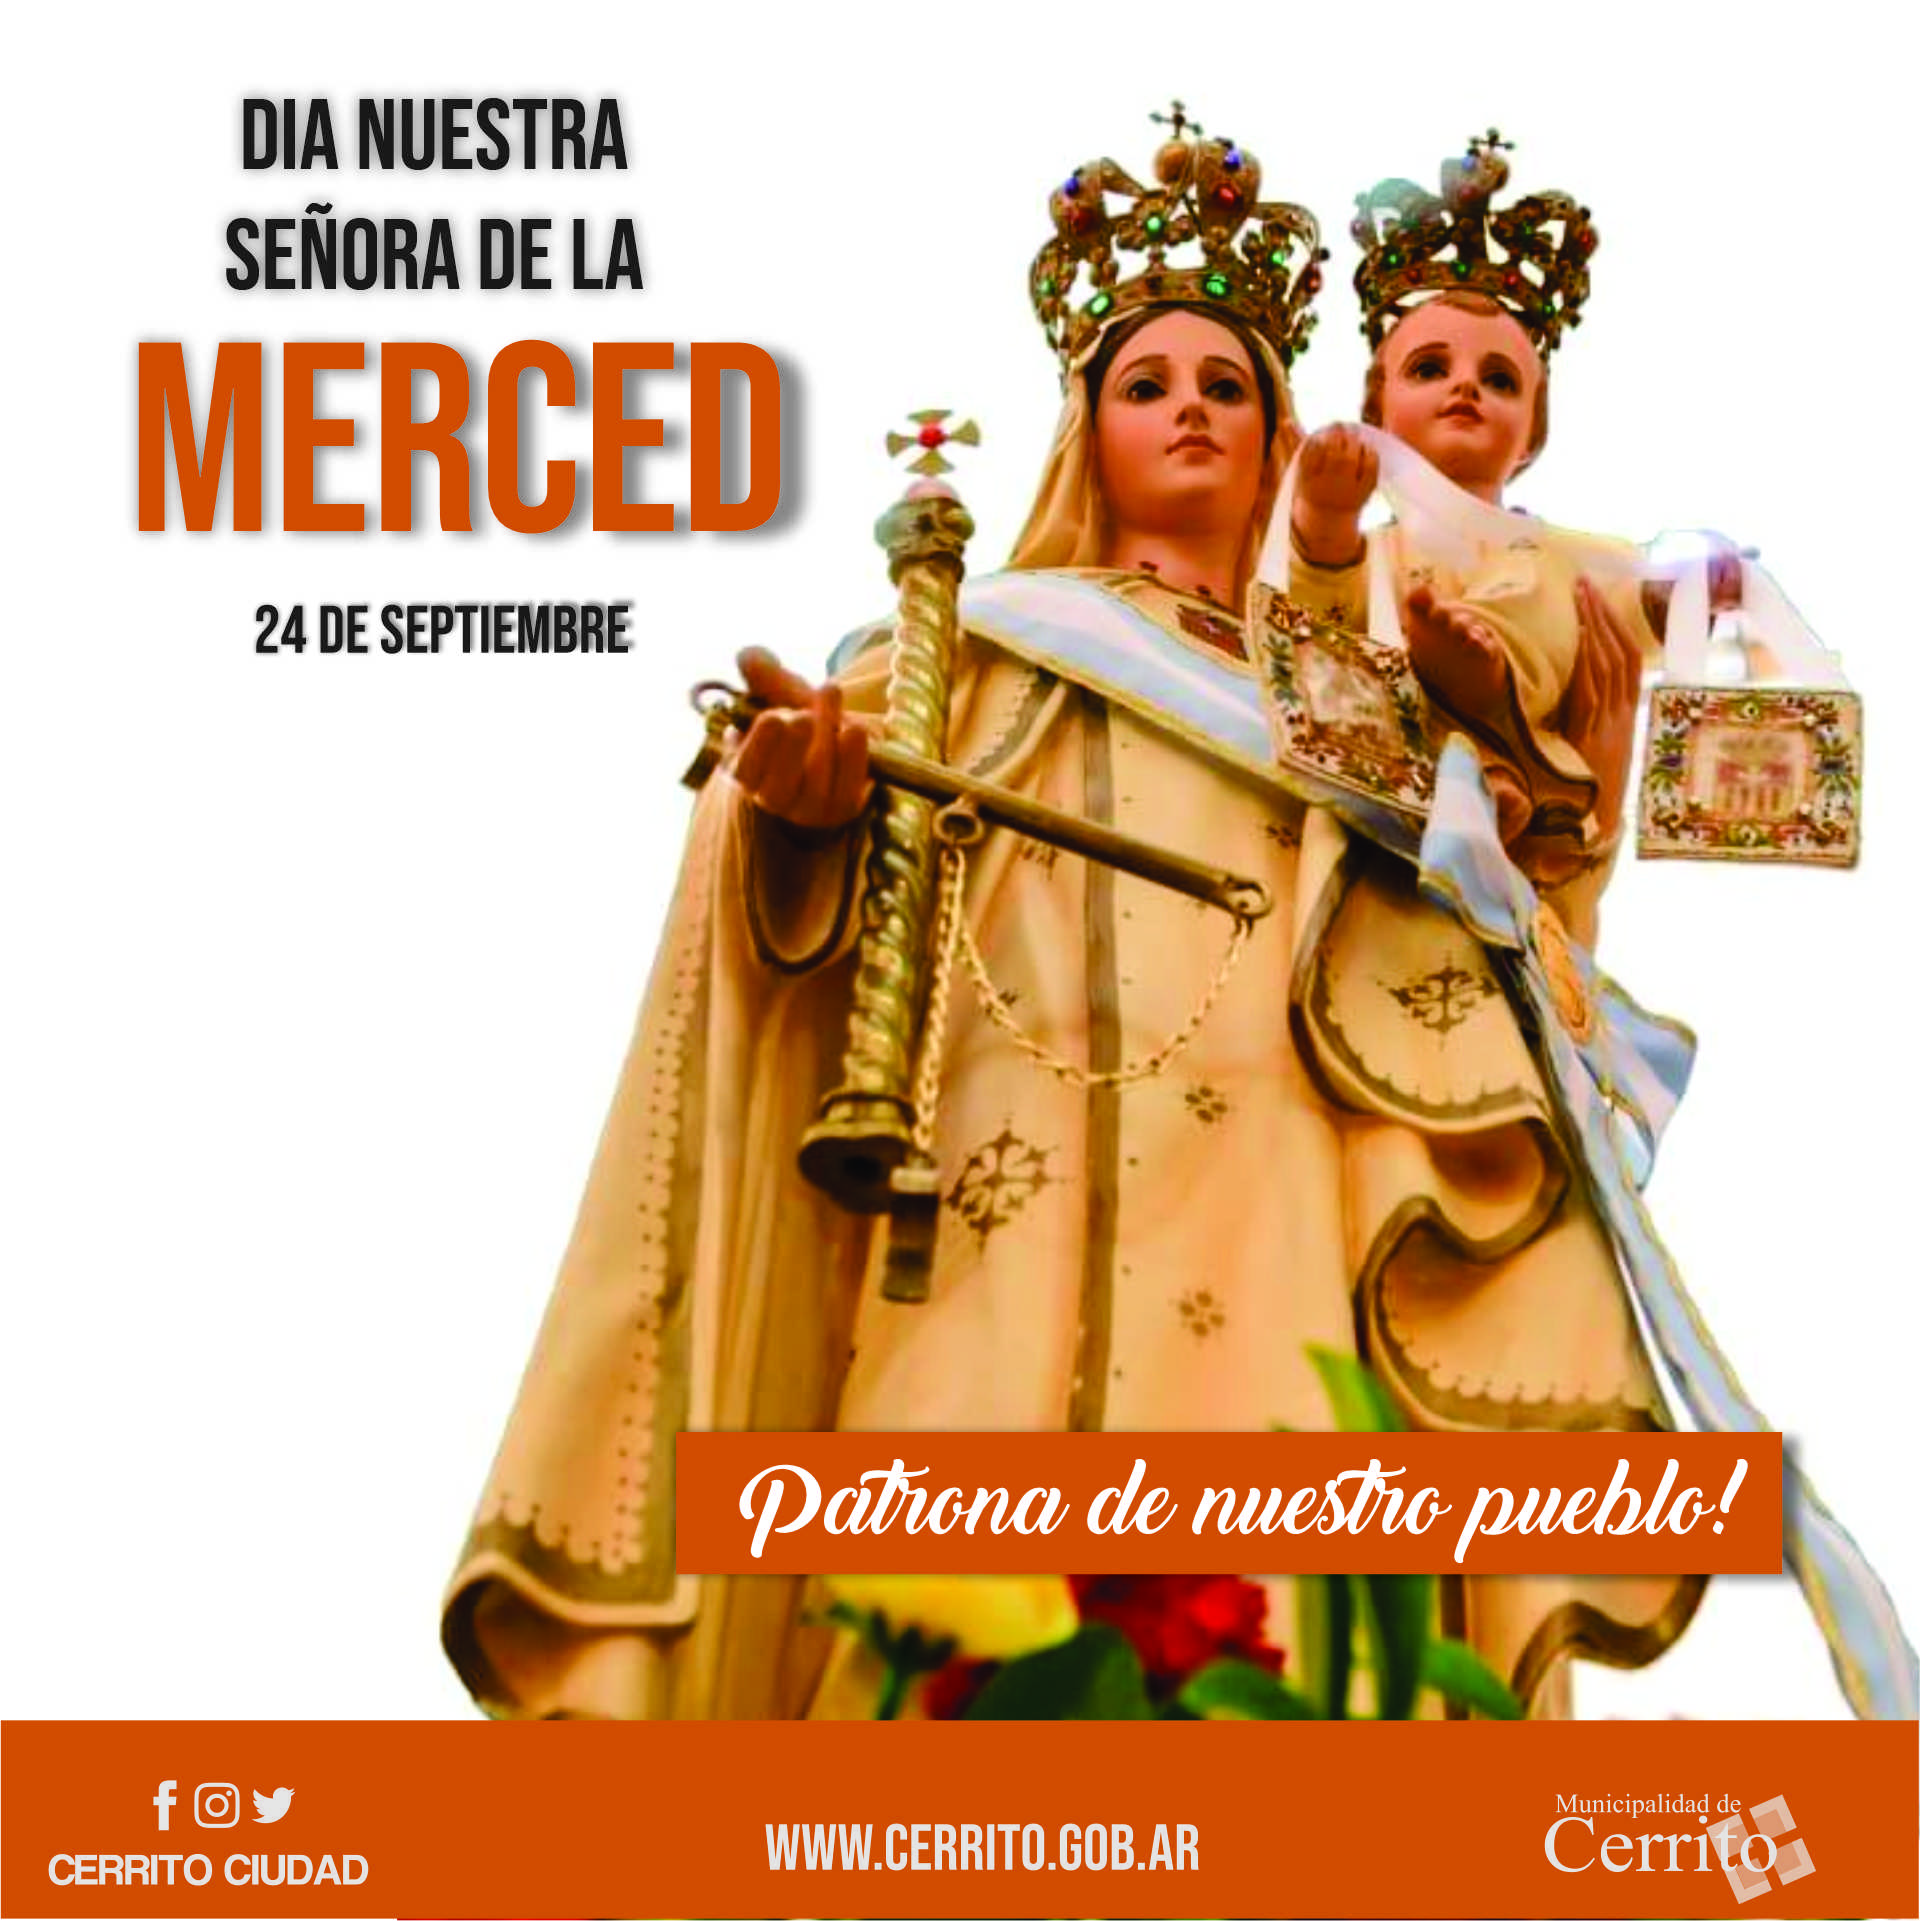 Fiesta de Nuestra Señora de la Merced: patrona de Cerrito